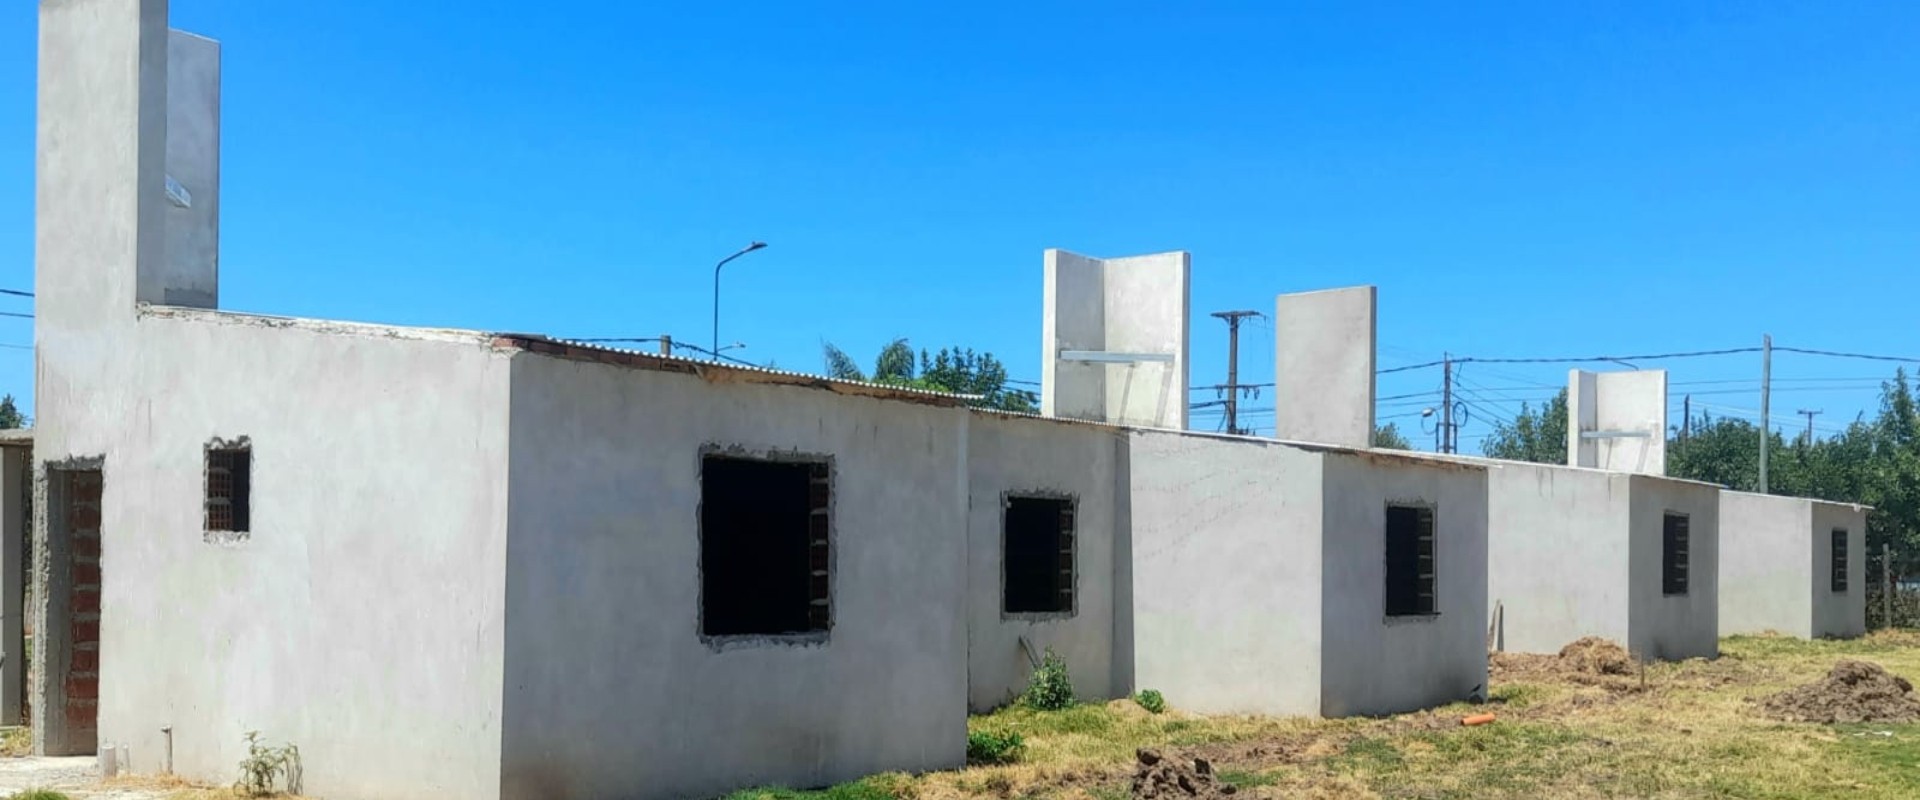 Con fondos provinciales se construyen 16 viviendas en Villa del Rosario